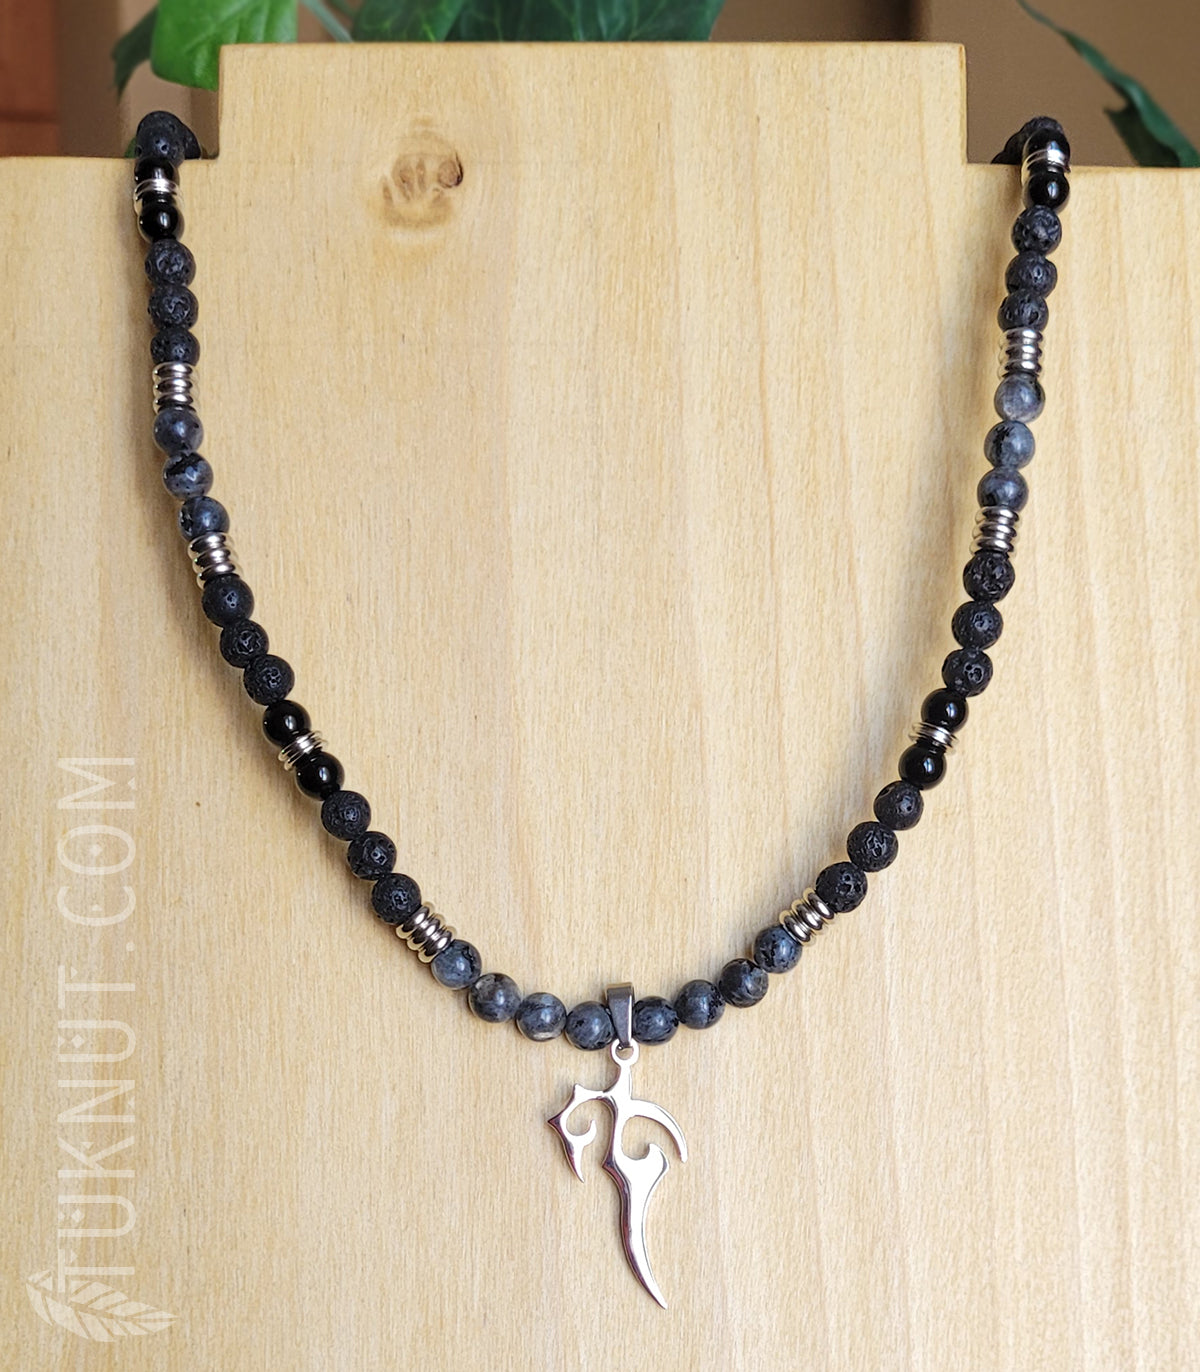 Collier avec pendentif (poignard de fantaisie) en acier inoxydable avec pierres volcaniques, onyx et labradorite (couleurs : noir, gris et argent) TUKNUT